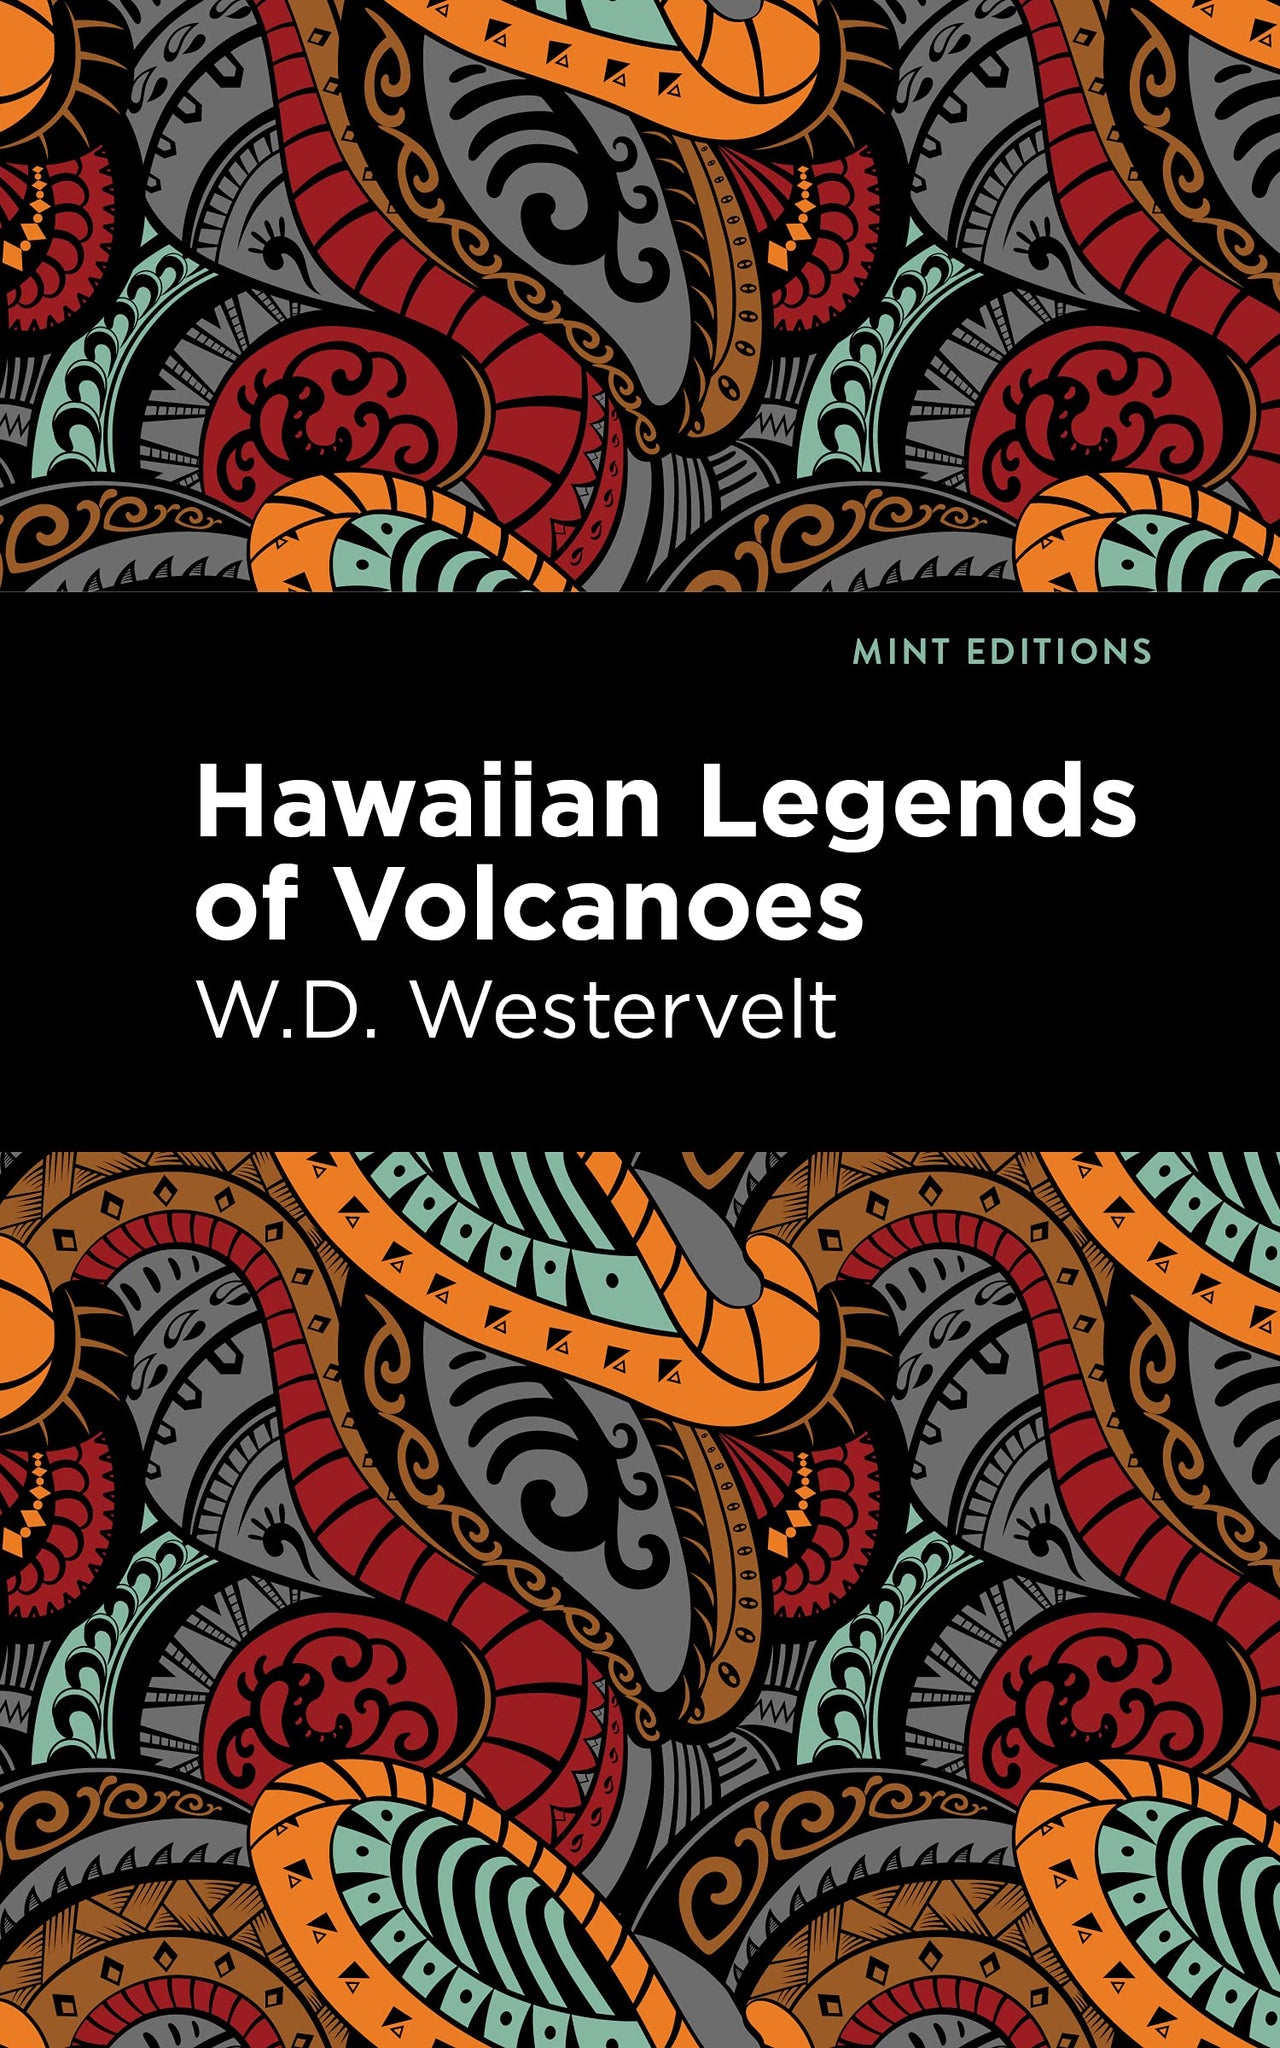 Hawaiian Legends of Volcanoes by W. D. Westervelt - hardcvr